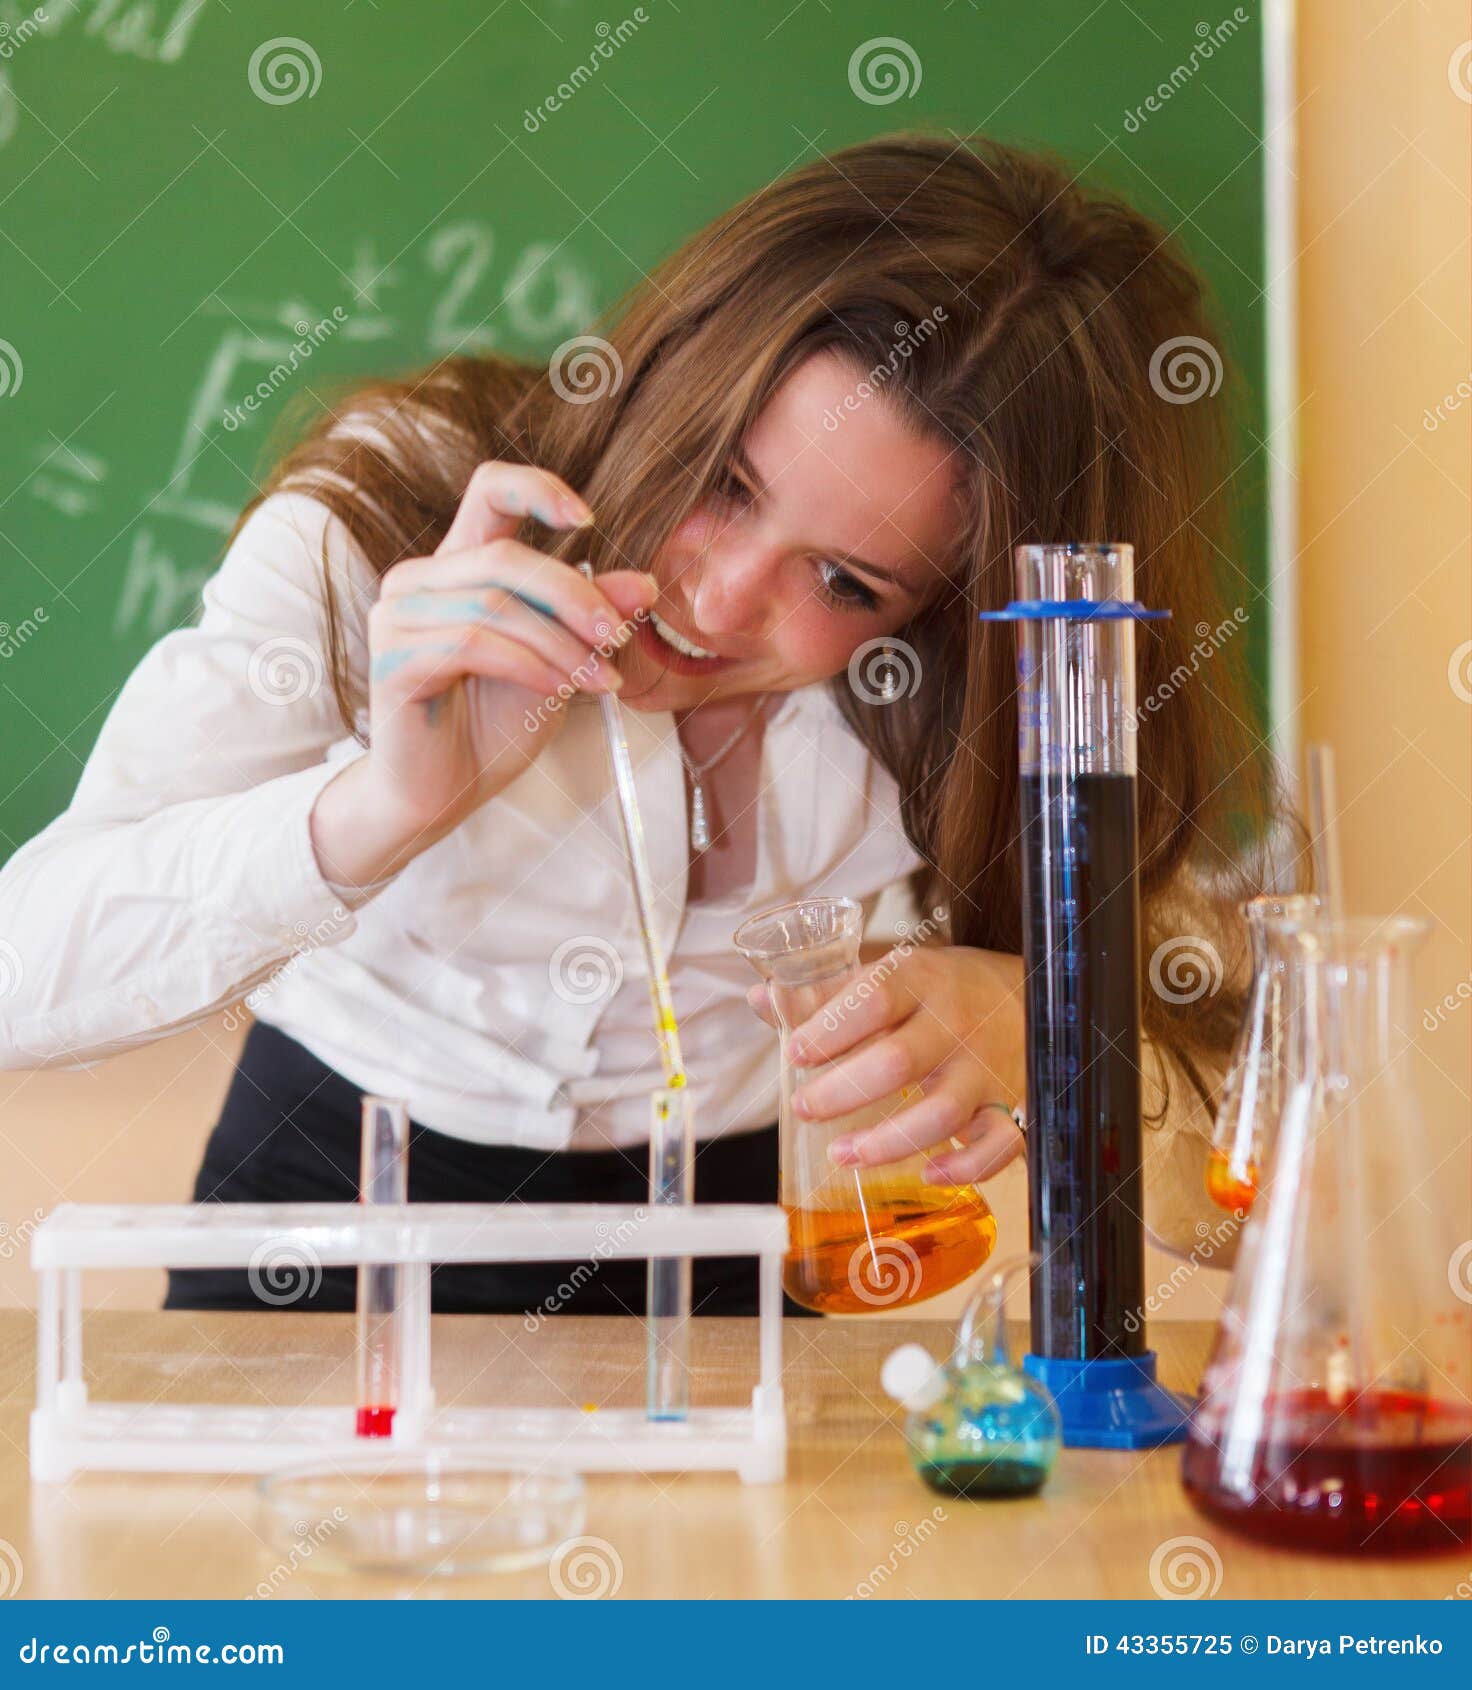 После красной химии. Урок химии. Химия девушка. Фотосессия урок химии. Подросток на уроке химии?.